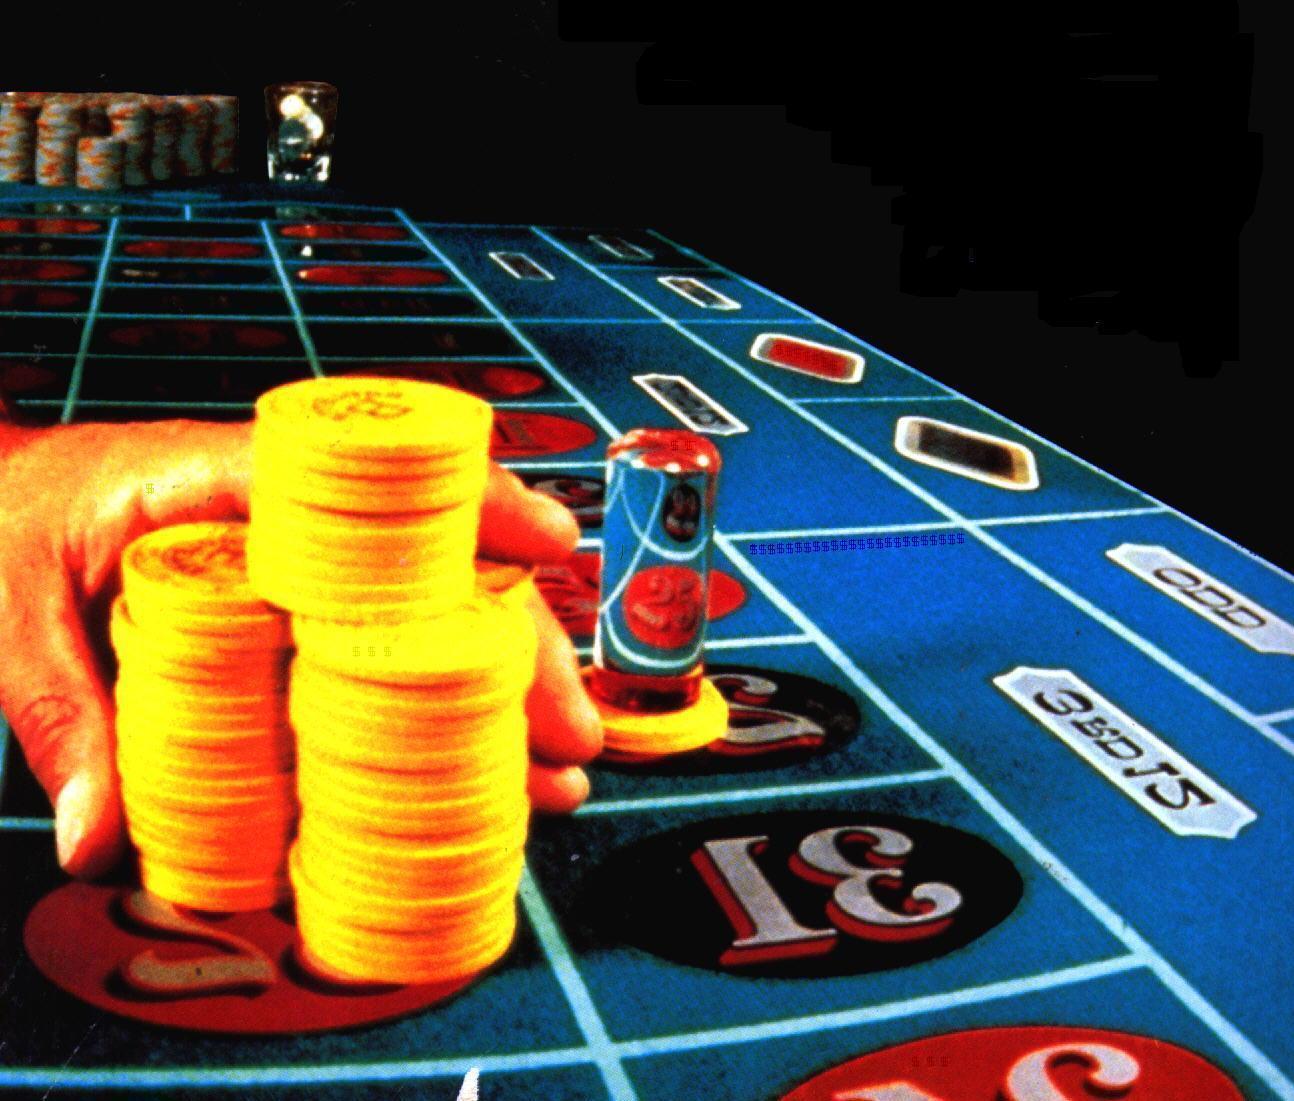 Poker online bono jugar casino en linea 464980